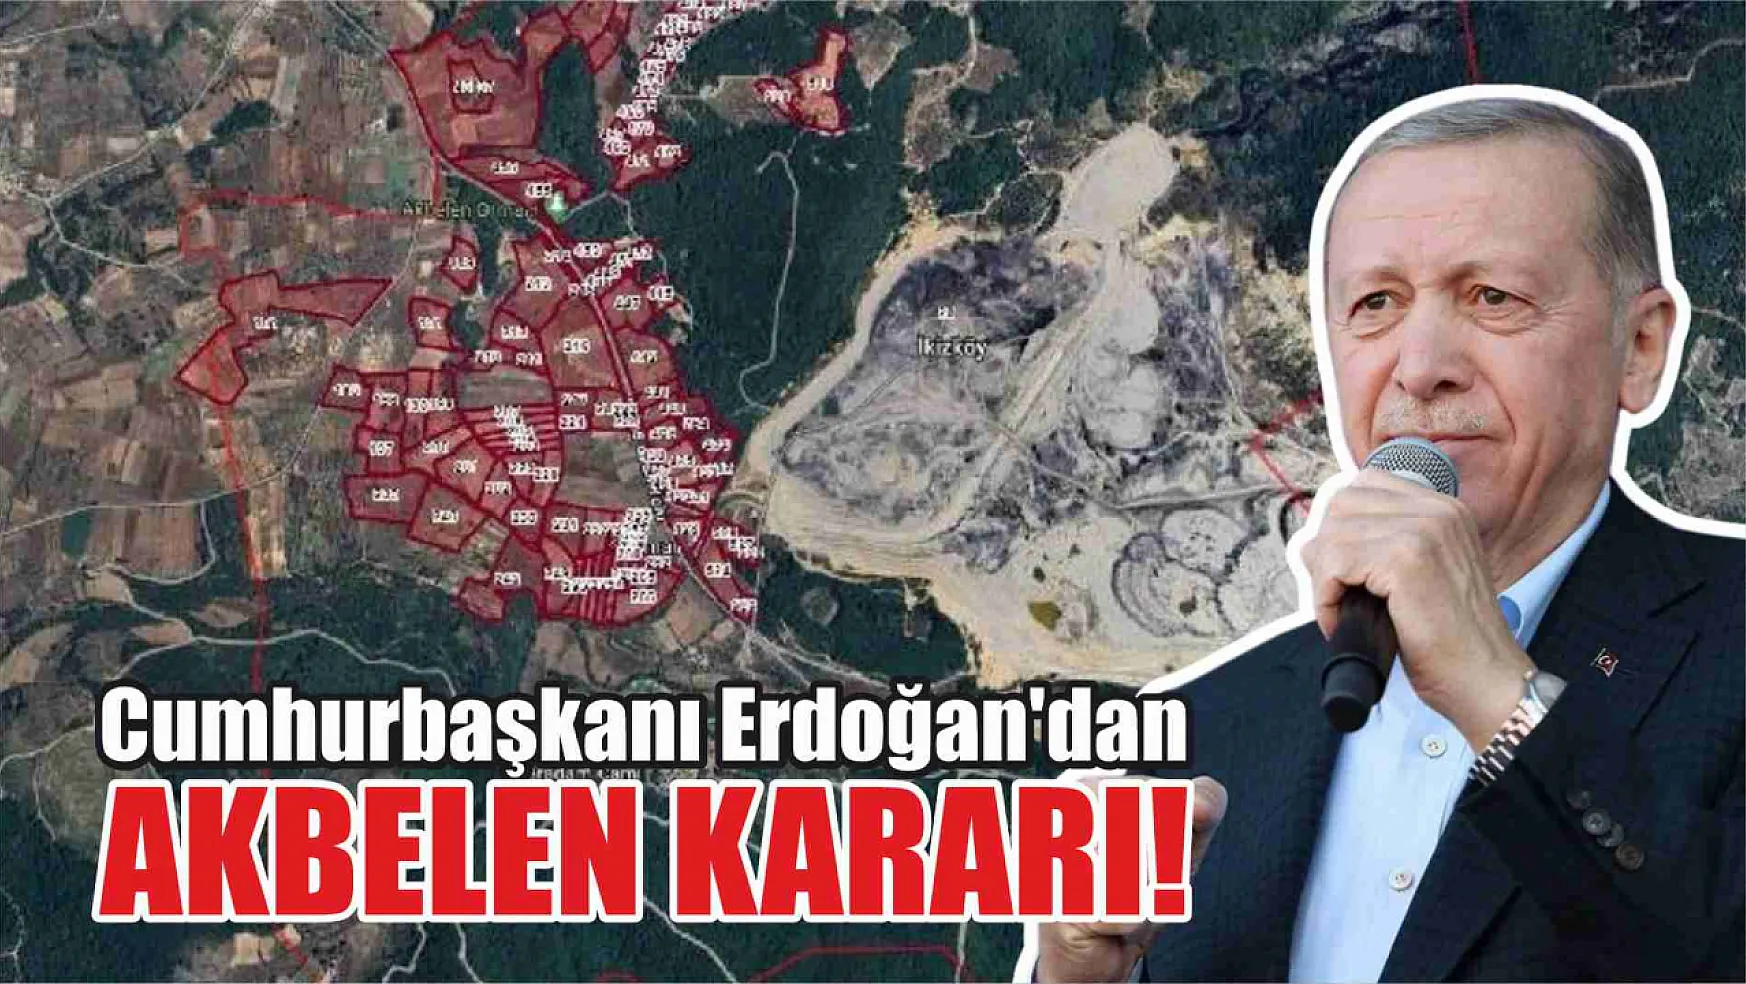 Cumhurbaşkanı Erdoğan'dan Akbelen Kararı!